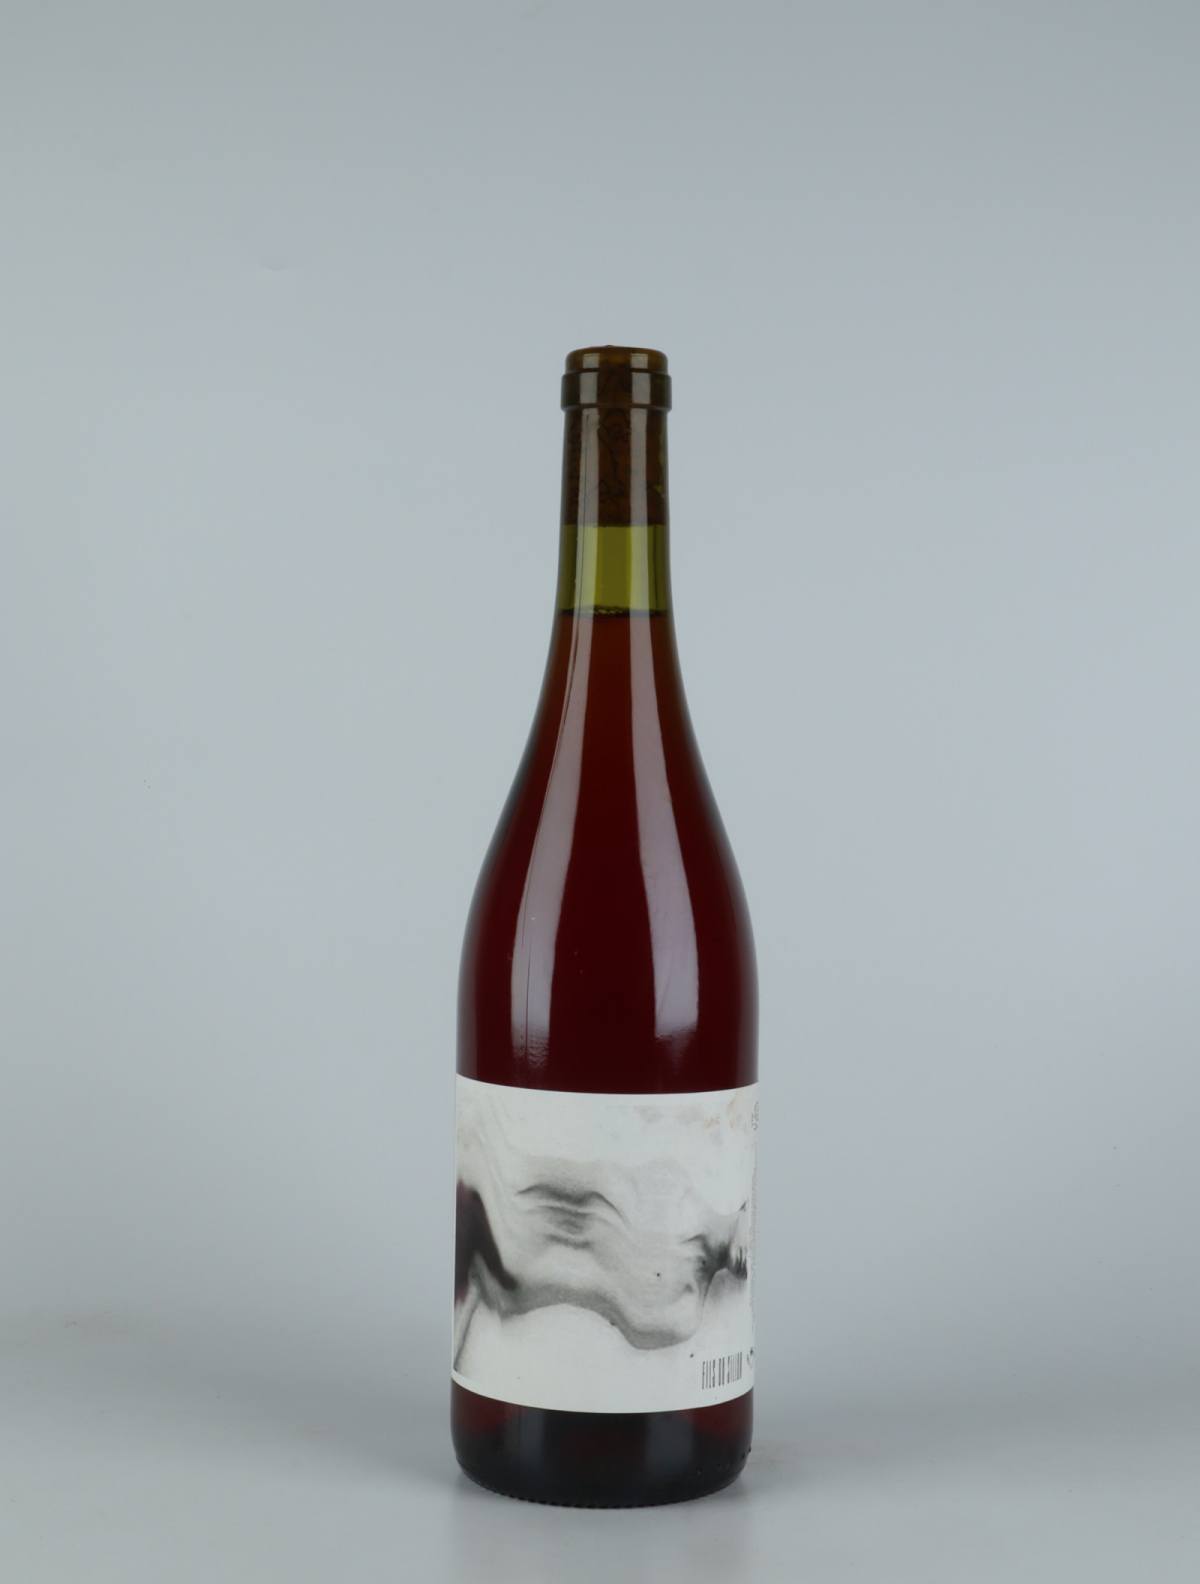 En flaske 2021 Fils du Sillon Rosé fra Ad Vinum, Gard i Frankrig